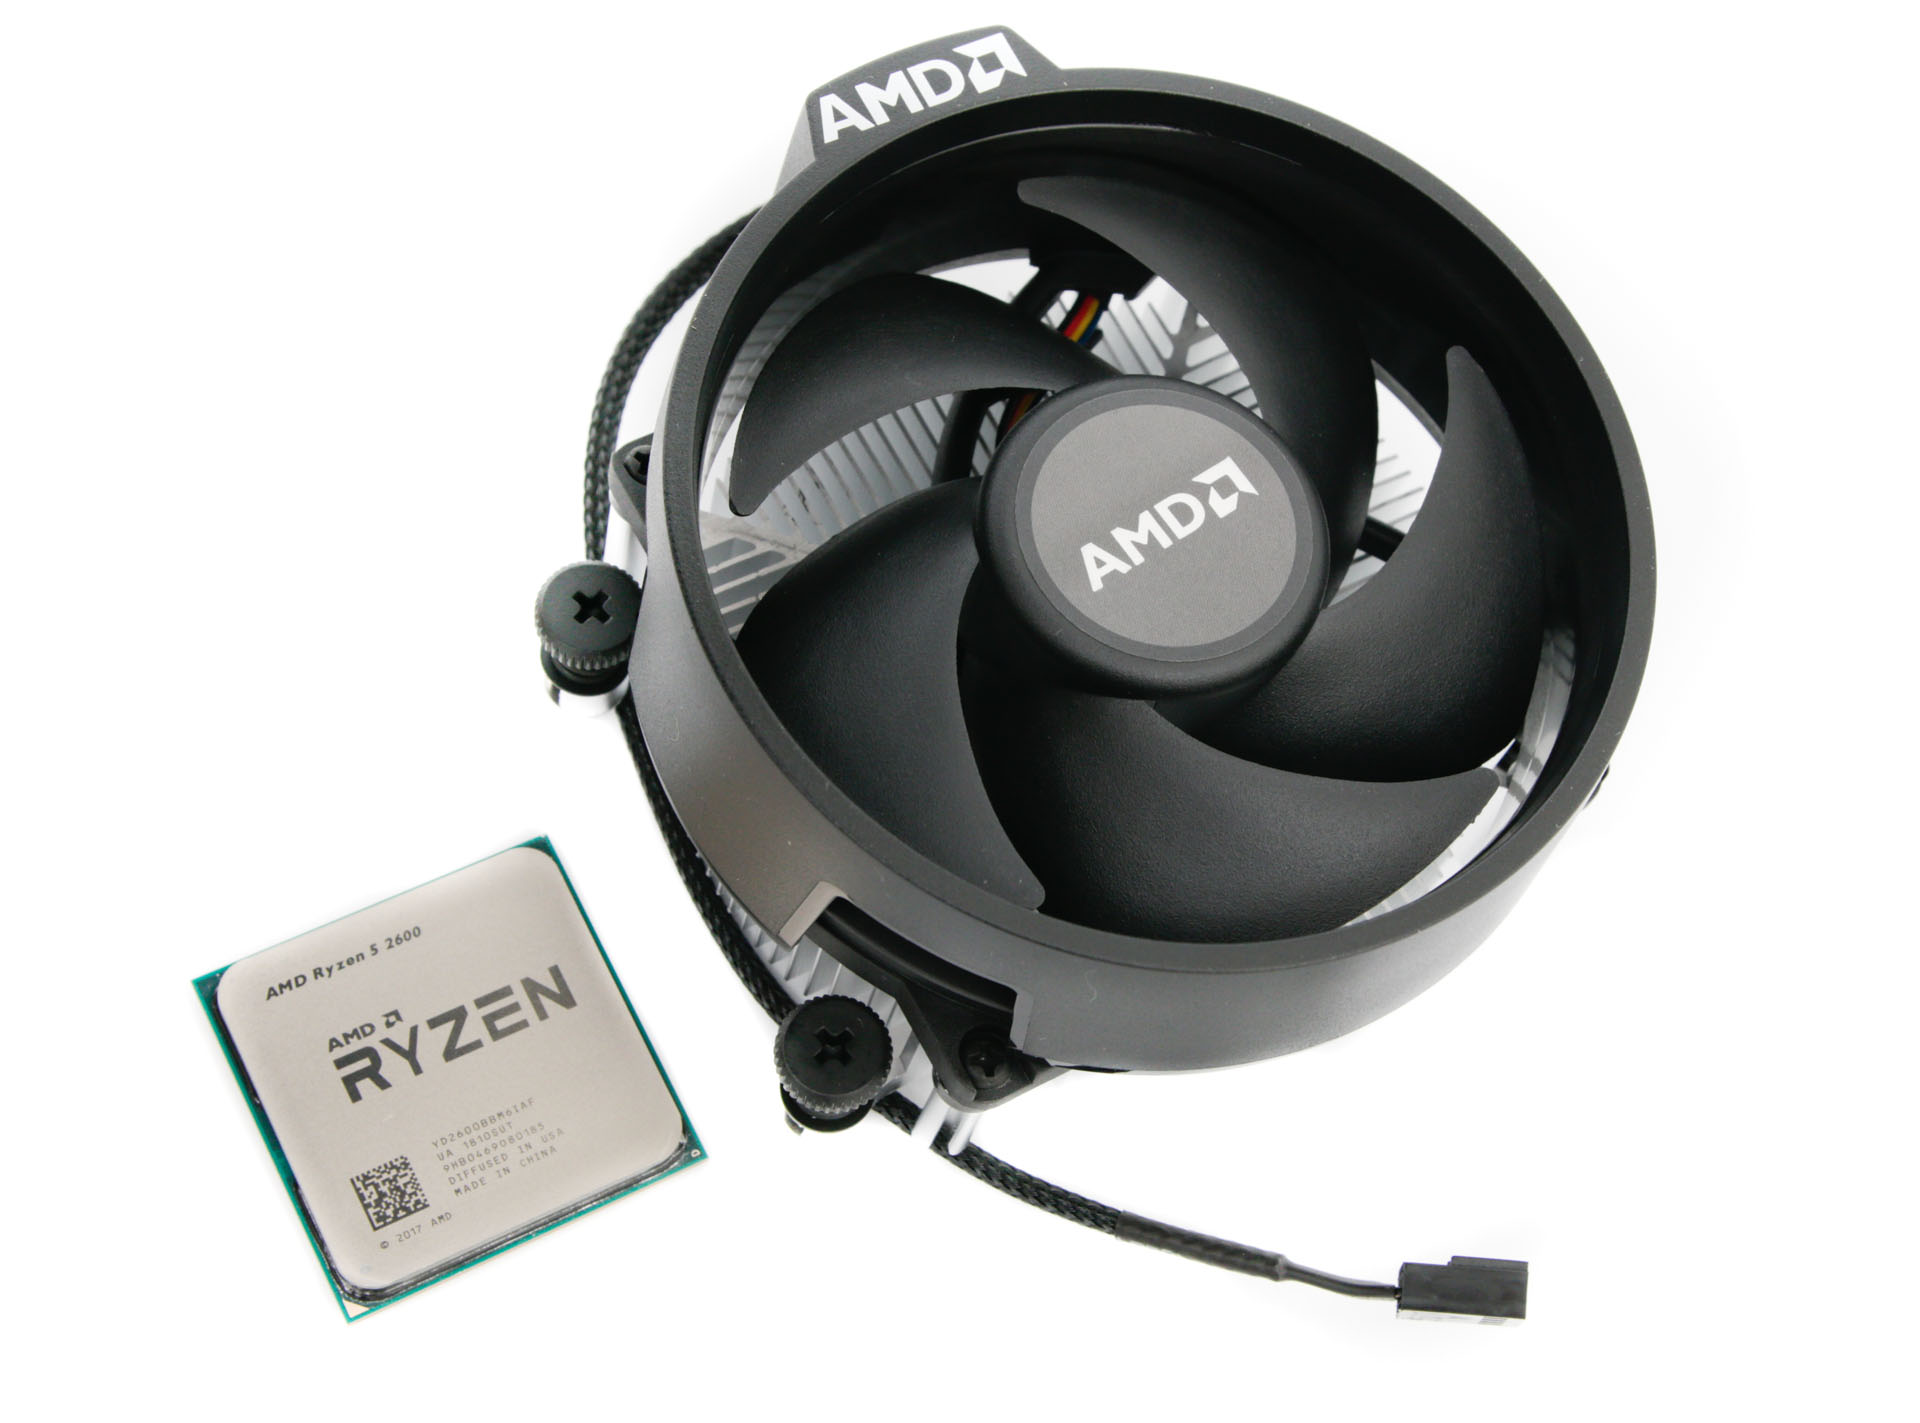 AMD Ryzen 5 2600 Review | bit-tech.net